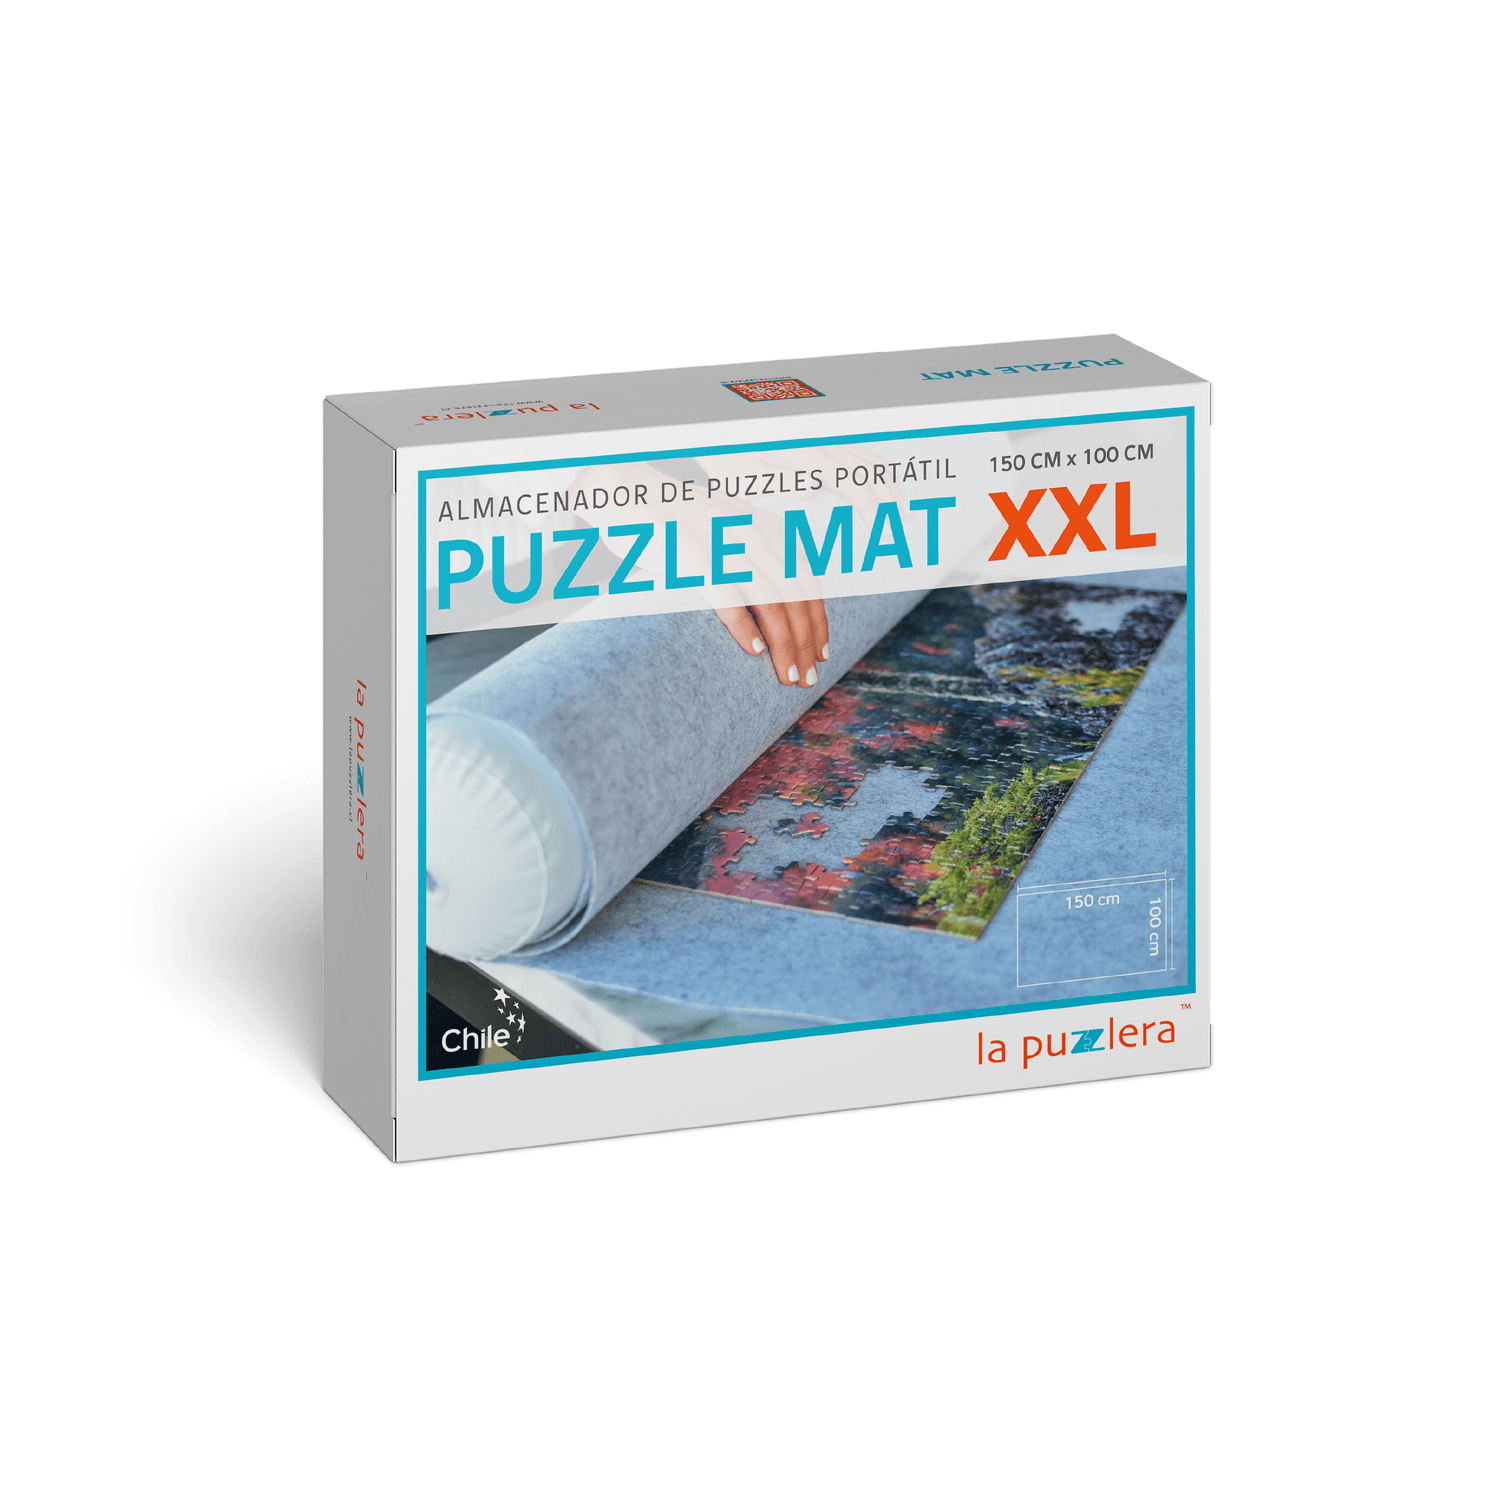 puzzle mat xxl | almacenador de puzzles portatil